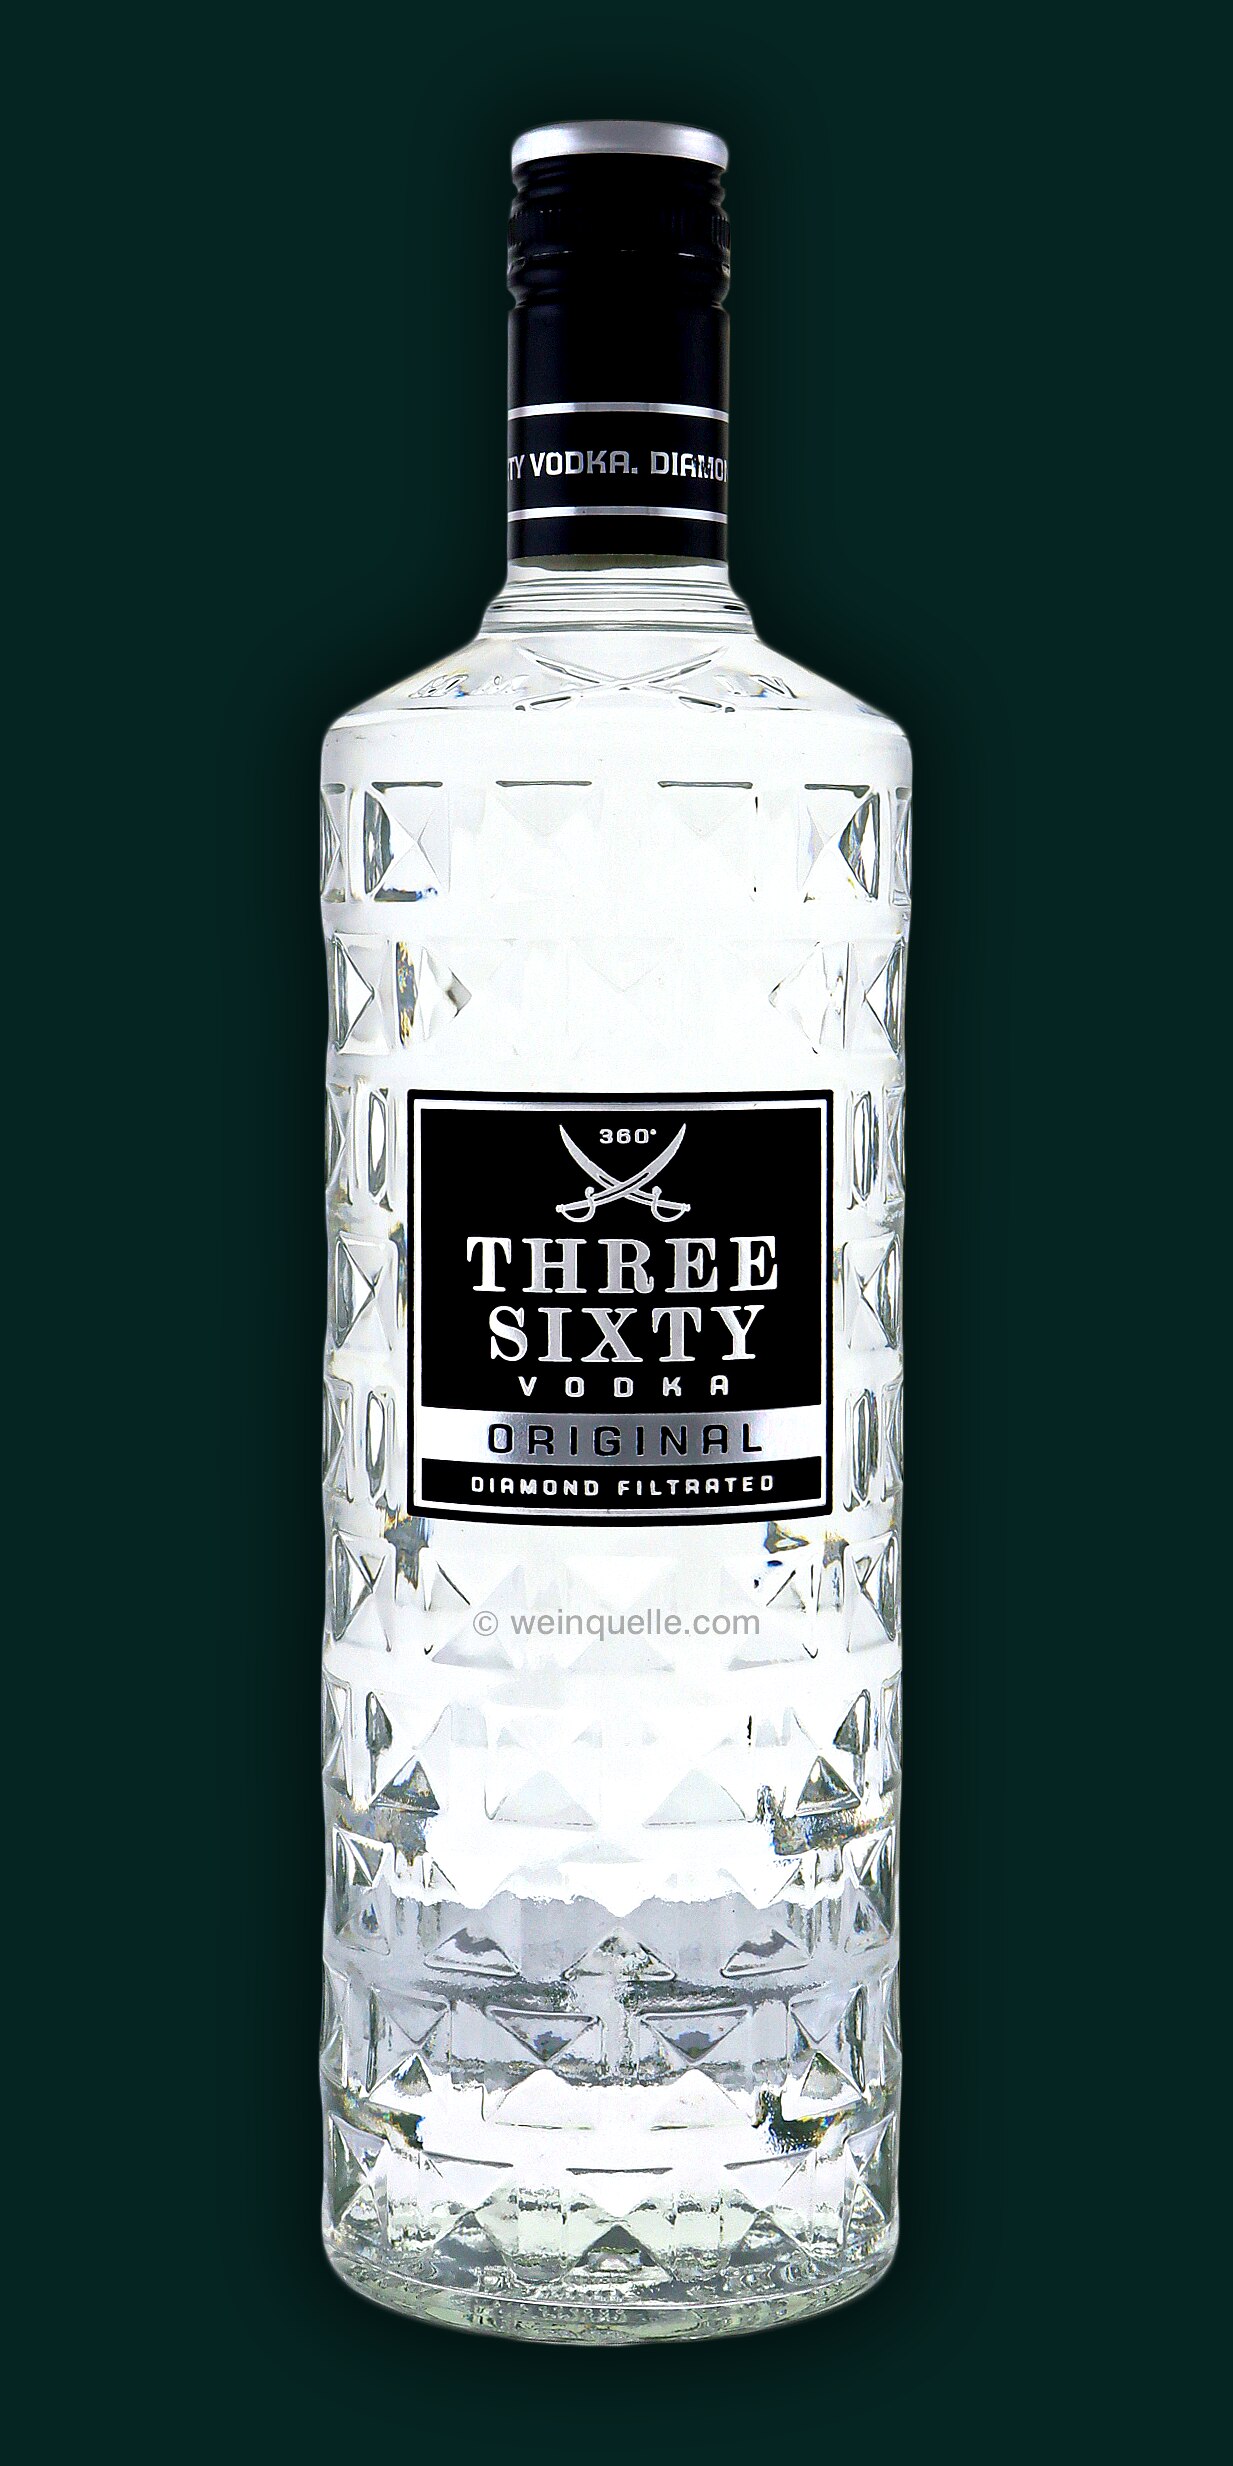 Three Sixty € 37,5% 1,0 Vodka Liter, Weinquelle 17,50 Lühmann 